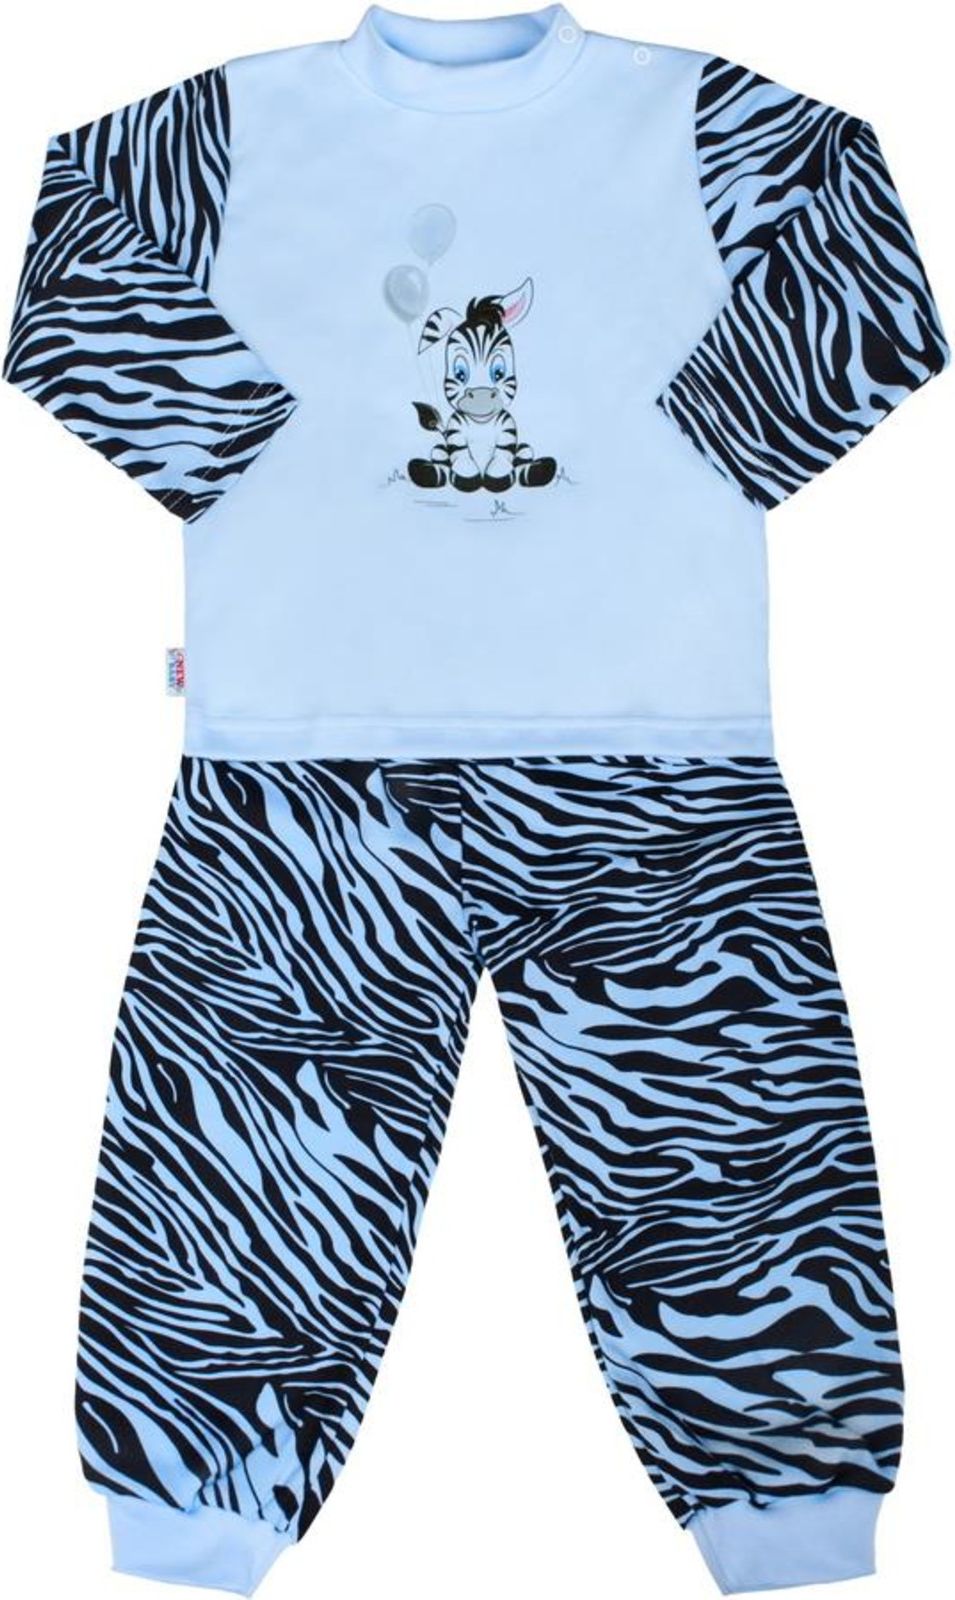 Dětské bavlněné pyžamo New Baby Zebra s balónkem modré - Dětské bavlněné pyžamo New Baby Zebra s balónkem modré - obrázek 1